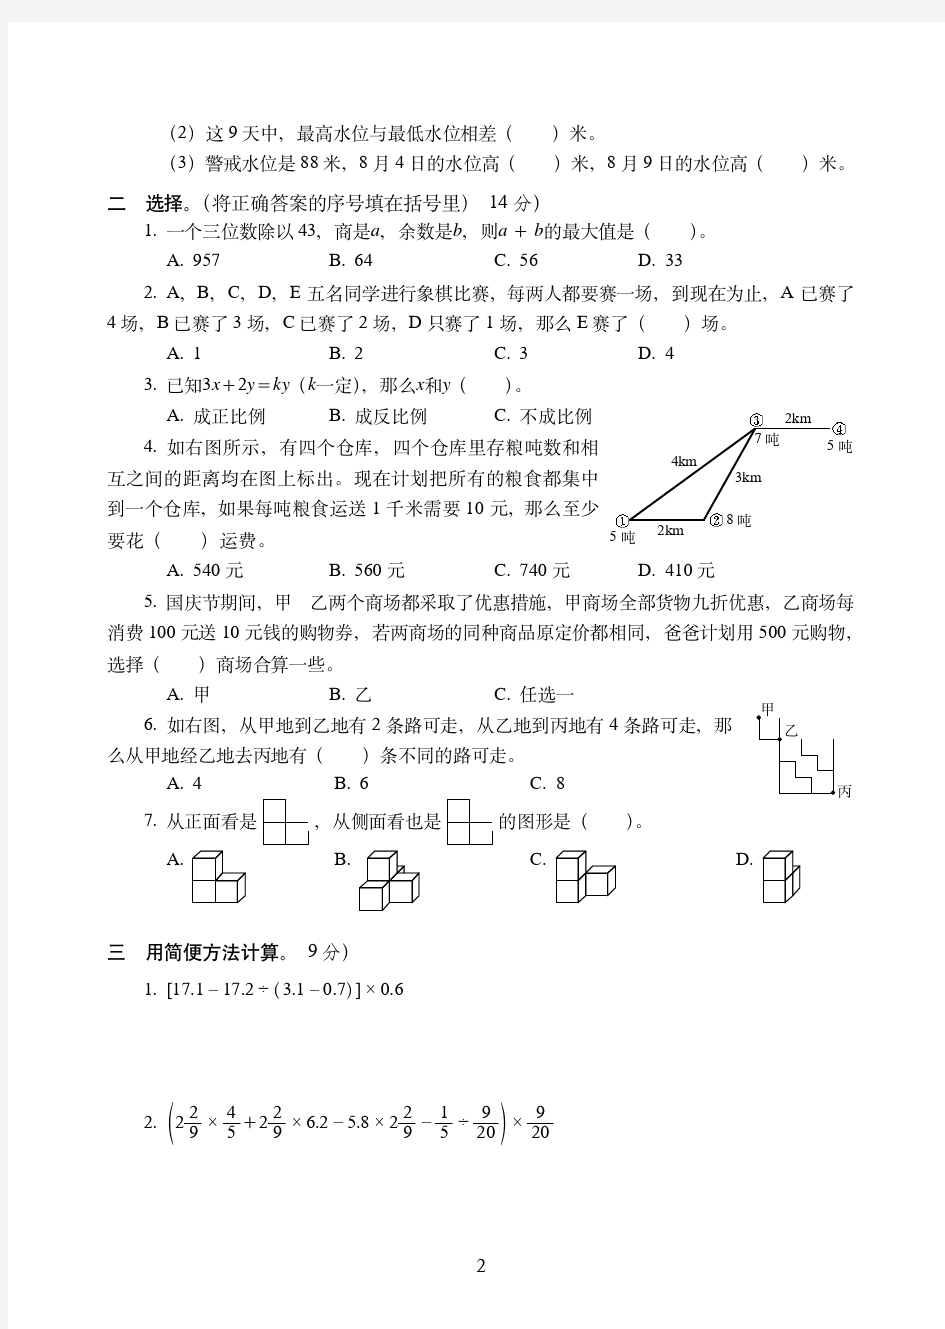 2019-2020名校小升初升学考试数学密卷附试卷答案( 5)